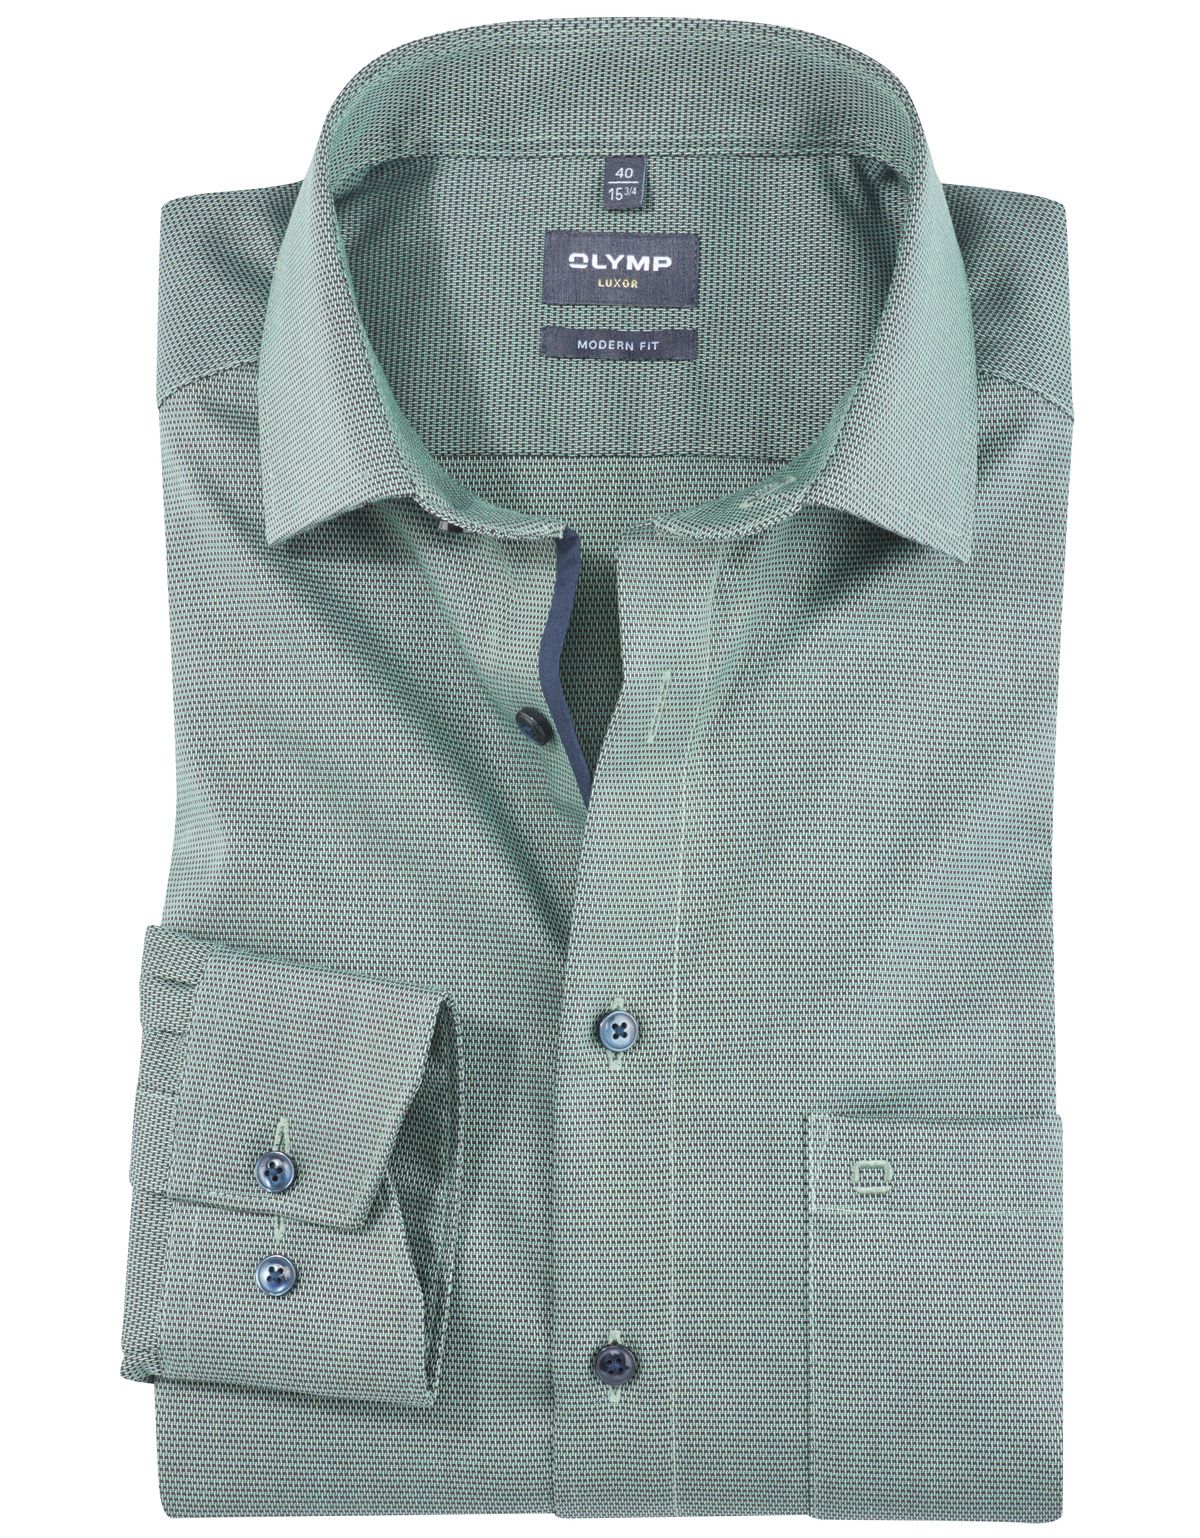 Рубашка мужская классическая OLYMP Luxor, modern fit[Зеленый]